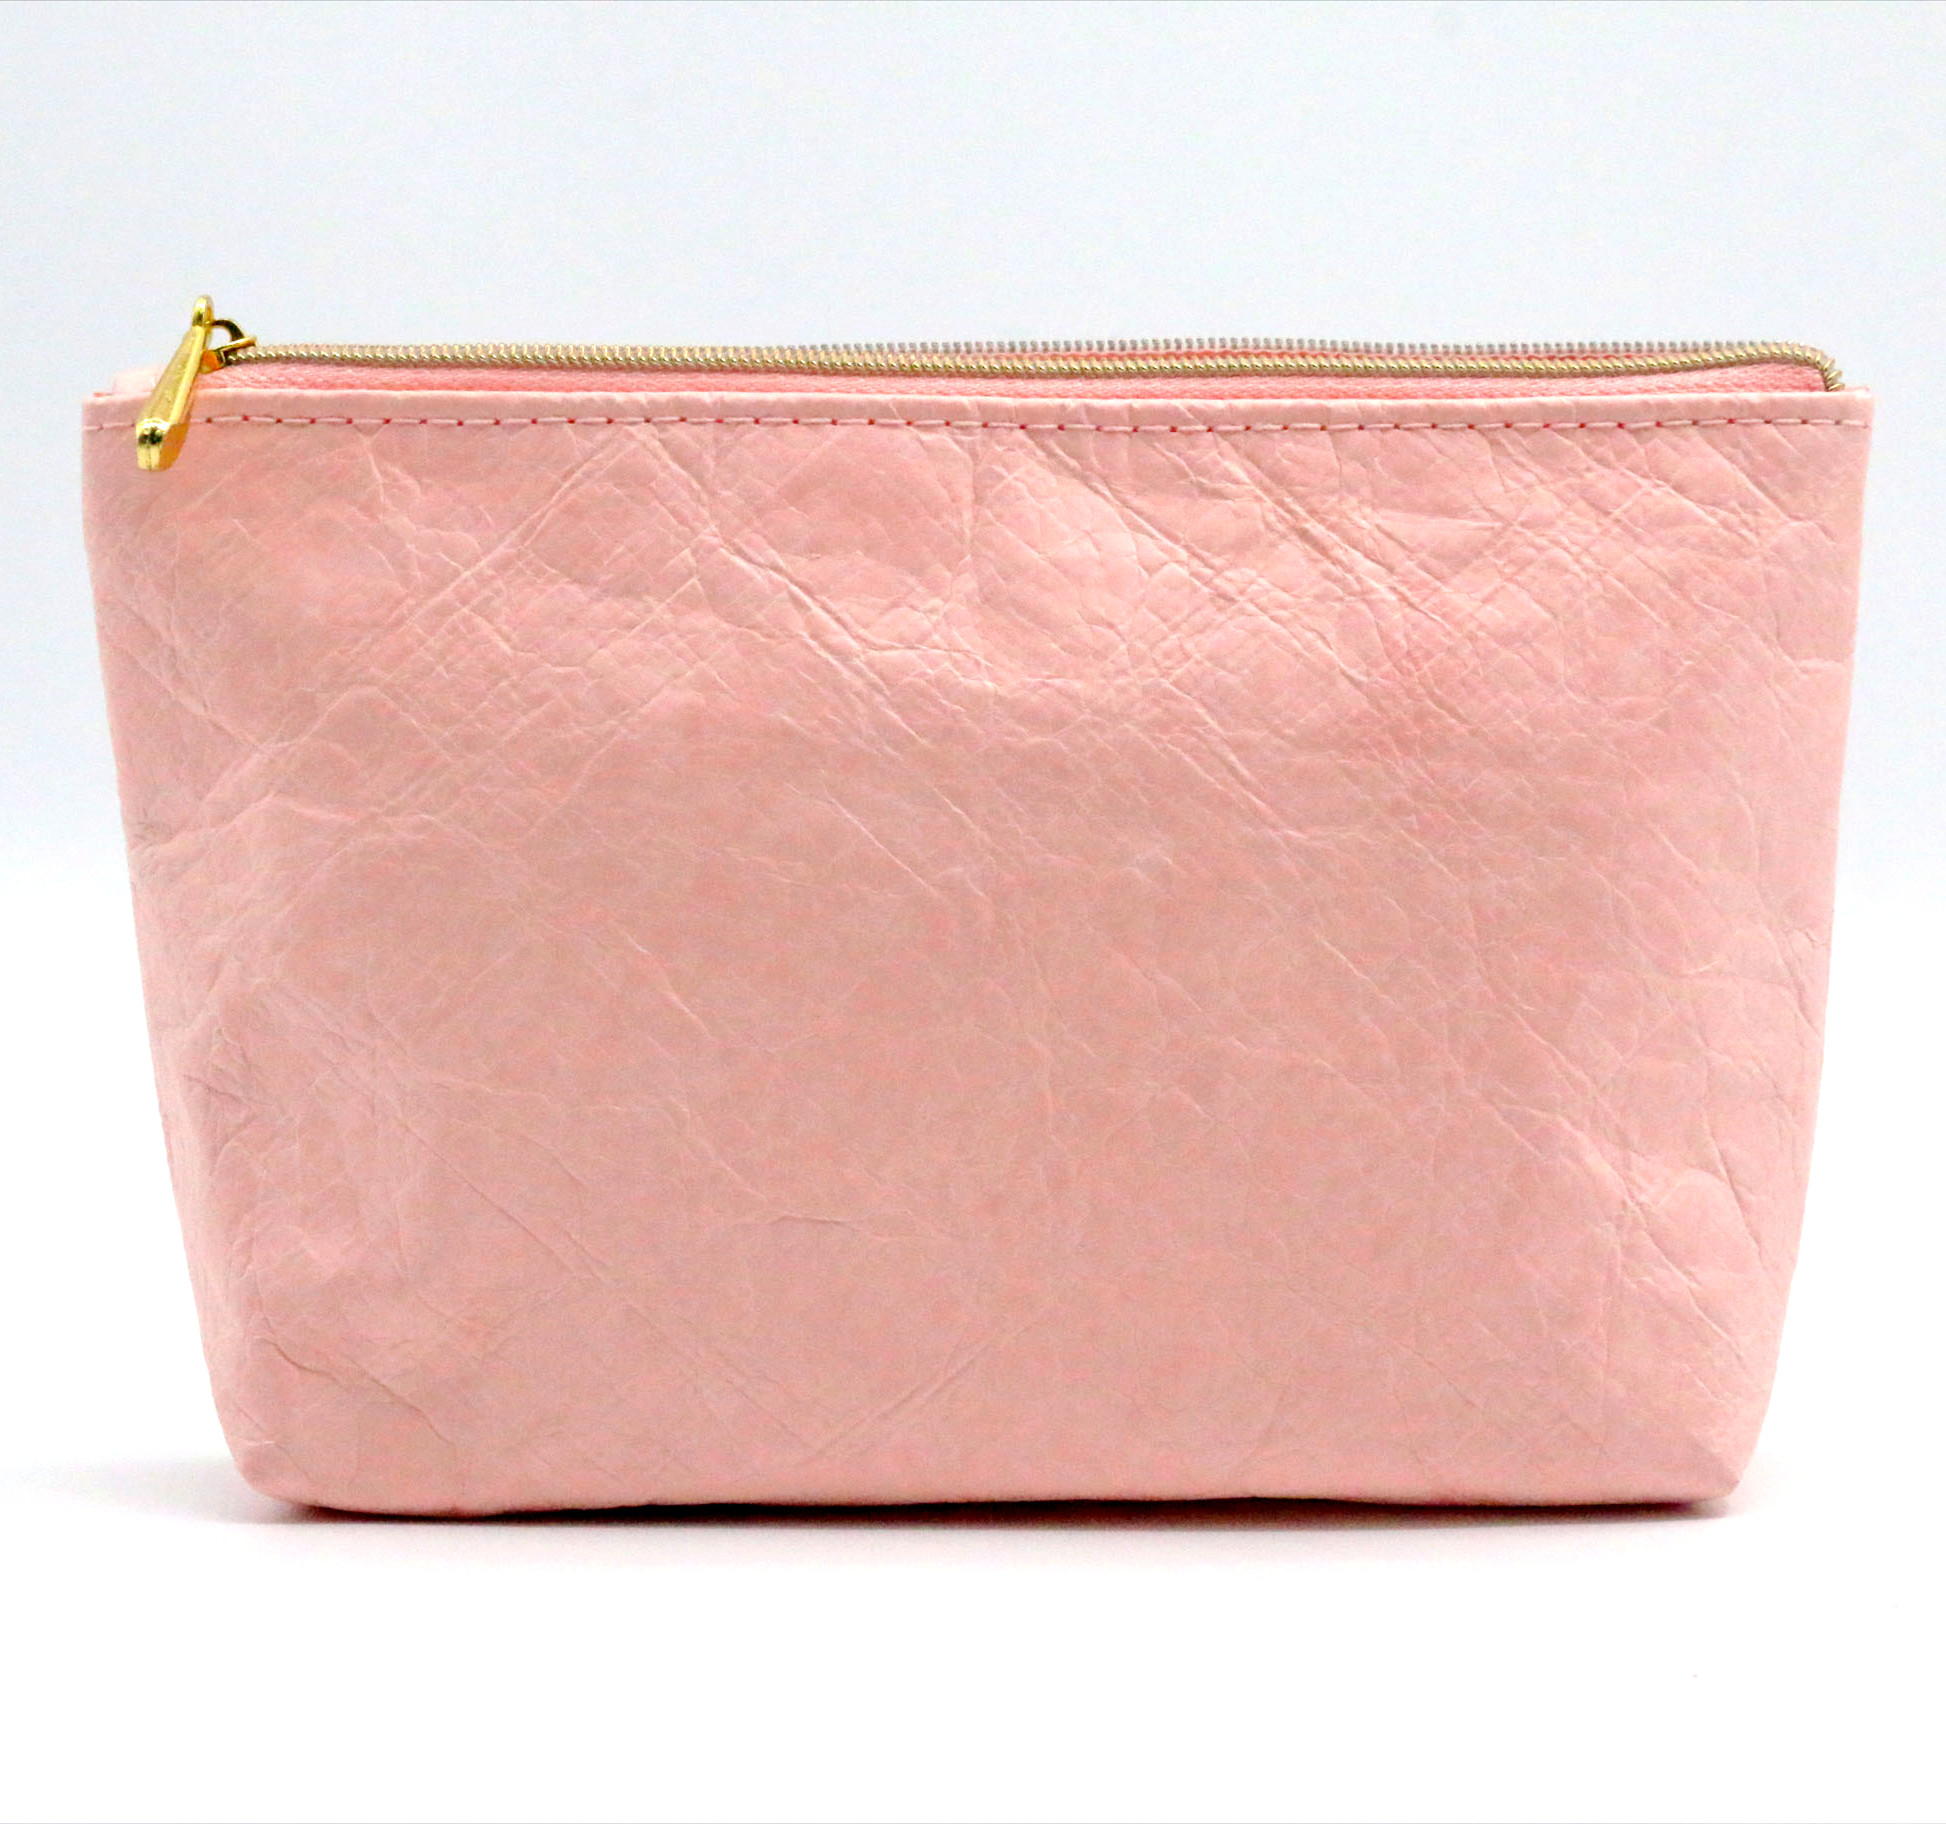 Sustainable Dupont Tyvek Paper Makeup Bag Pink Waterproof Tyvek Toiletry Bag Tear-resistant Eco-friendly Tyvek Cosmetic Bag